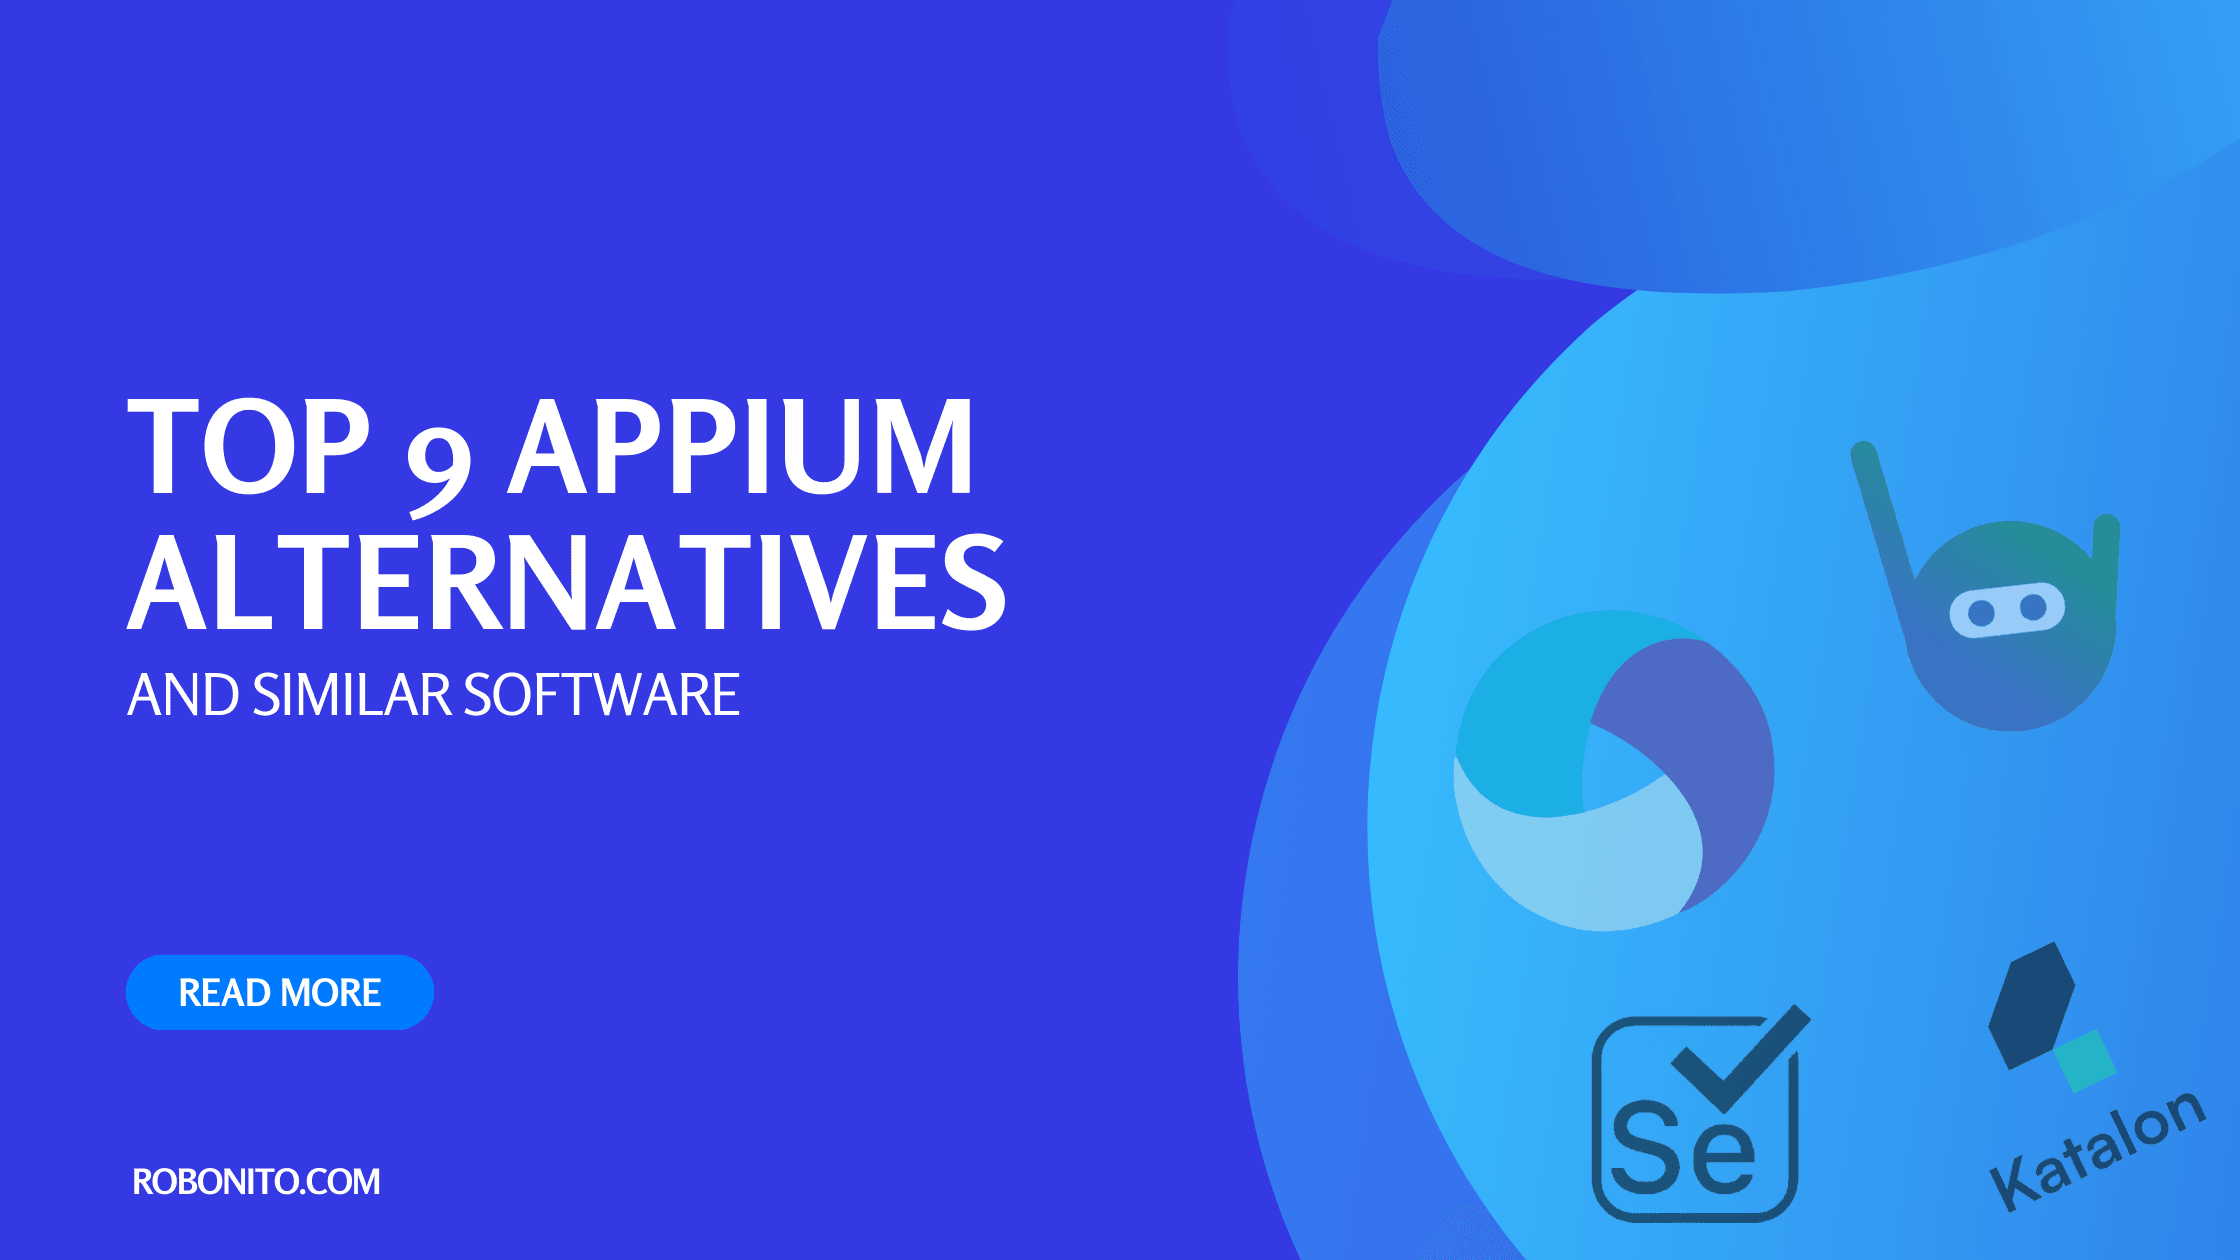 Top 9 Appium Alternatives